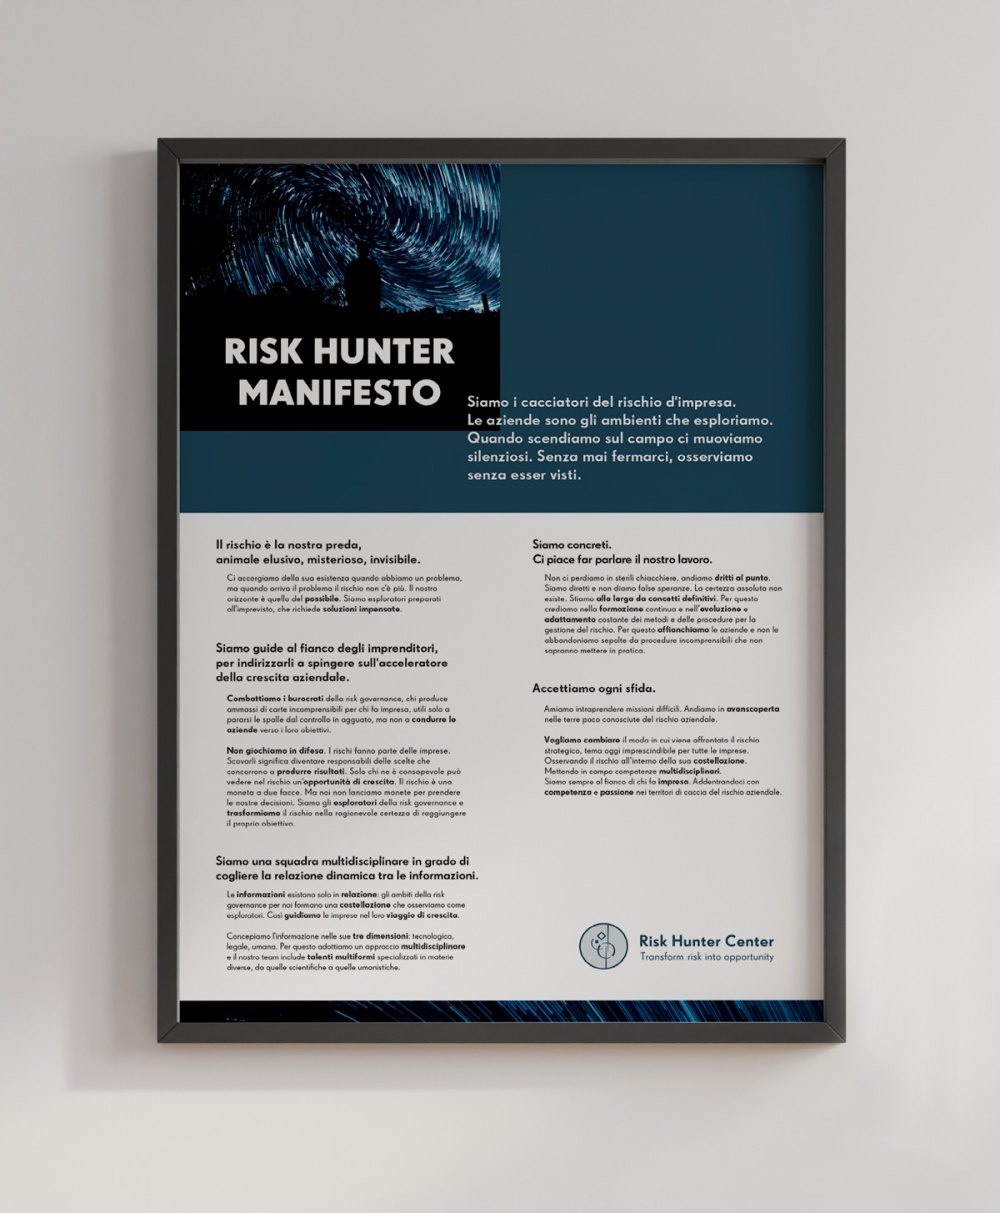 text-manifesto risk hunter center